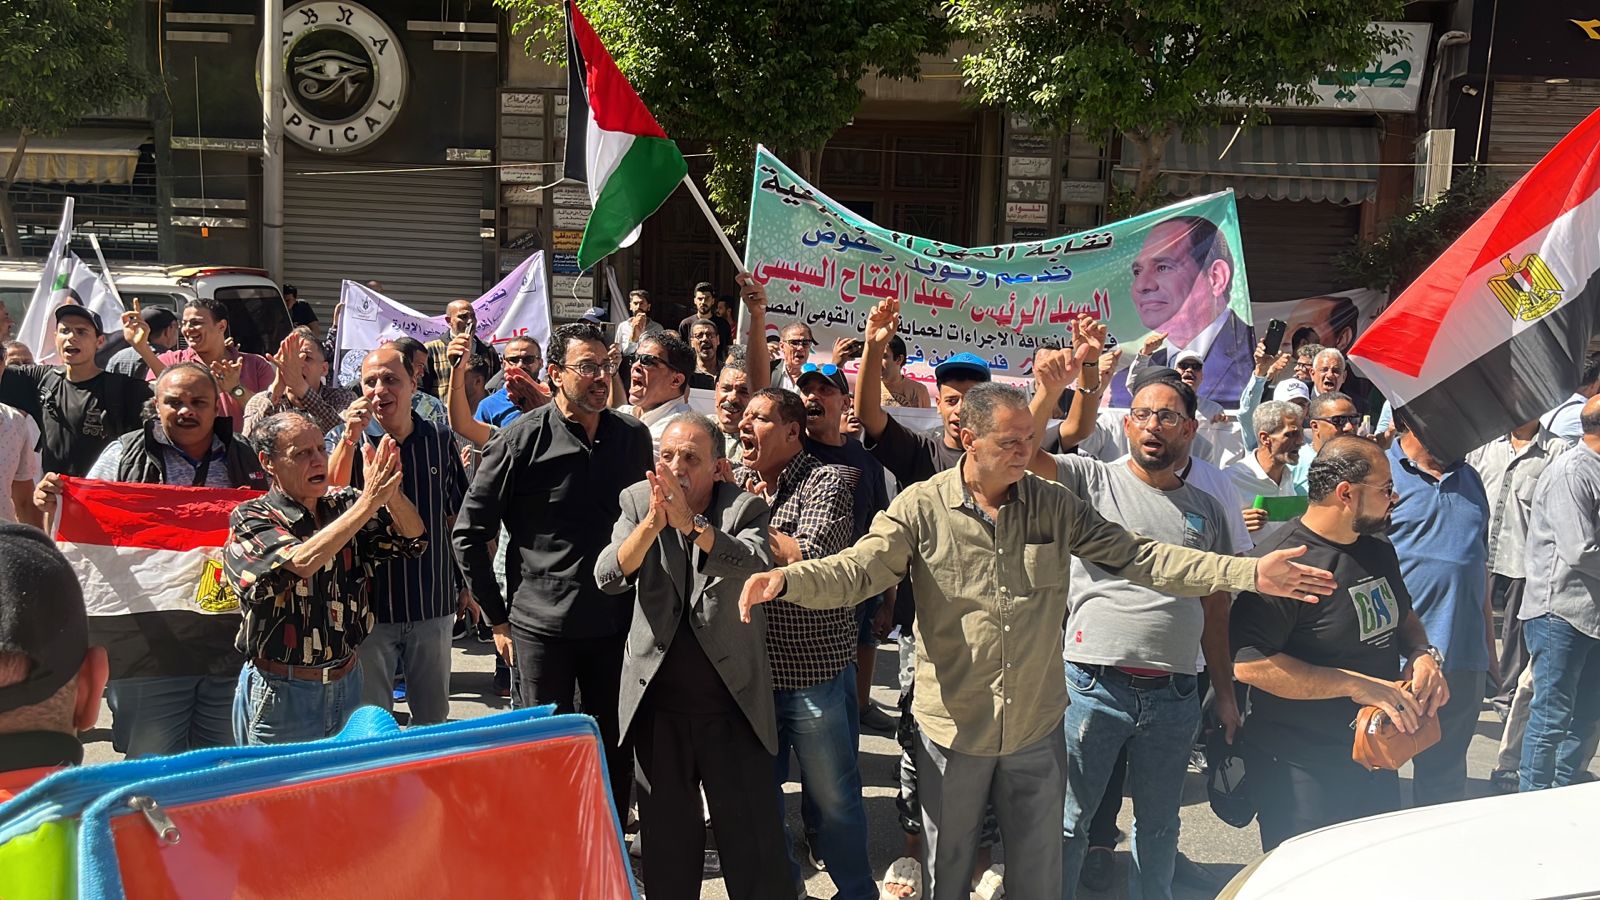 عاجل | بالصور وقفة حاشدة أمام نقابة المهن الموسيقية في بني سويف لدعم فلسطين 2